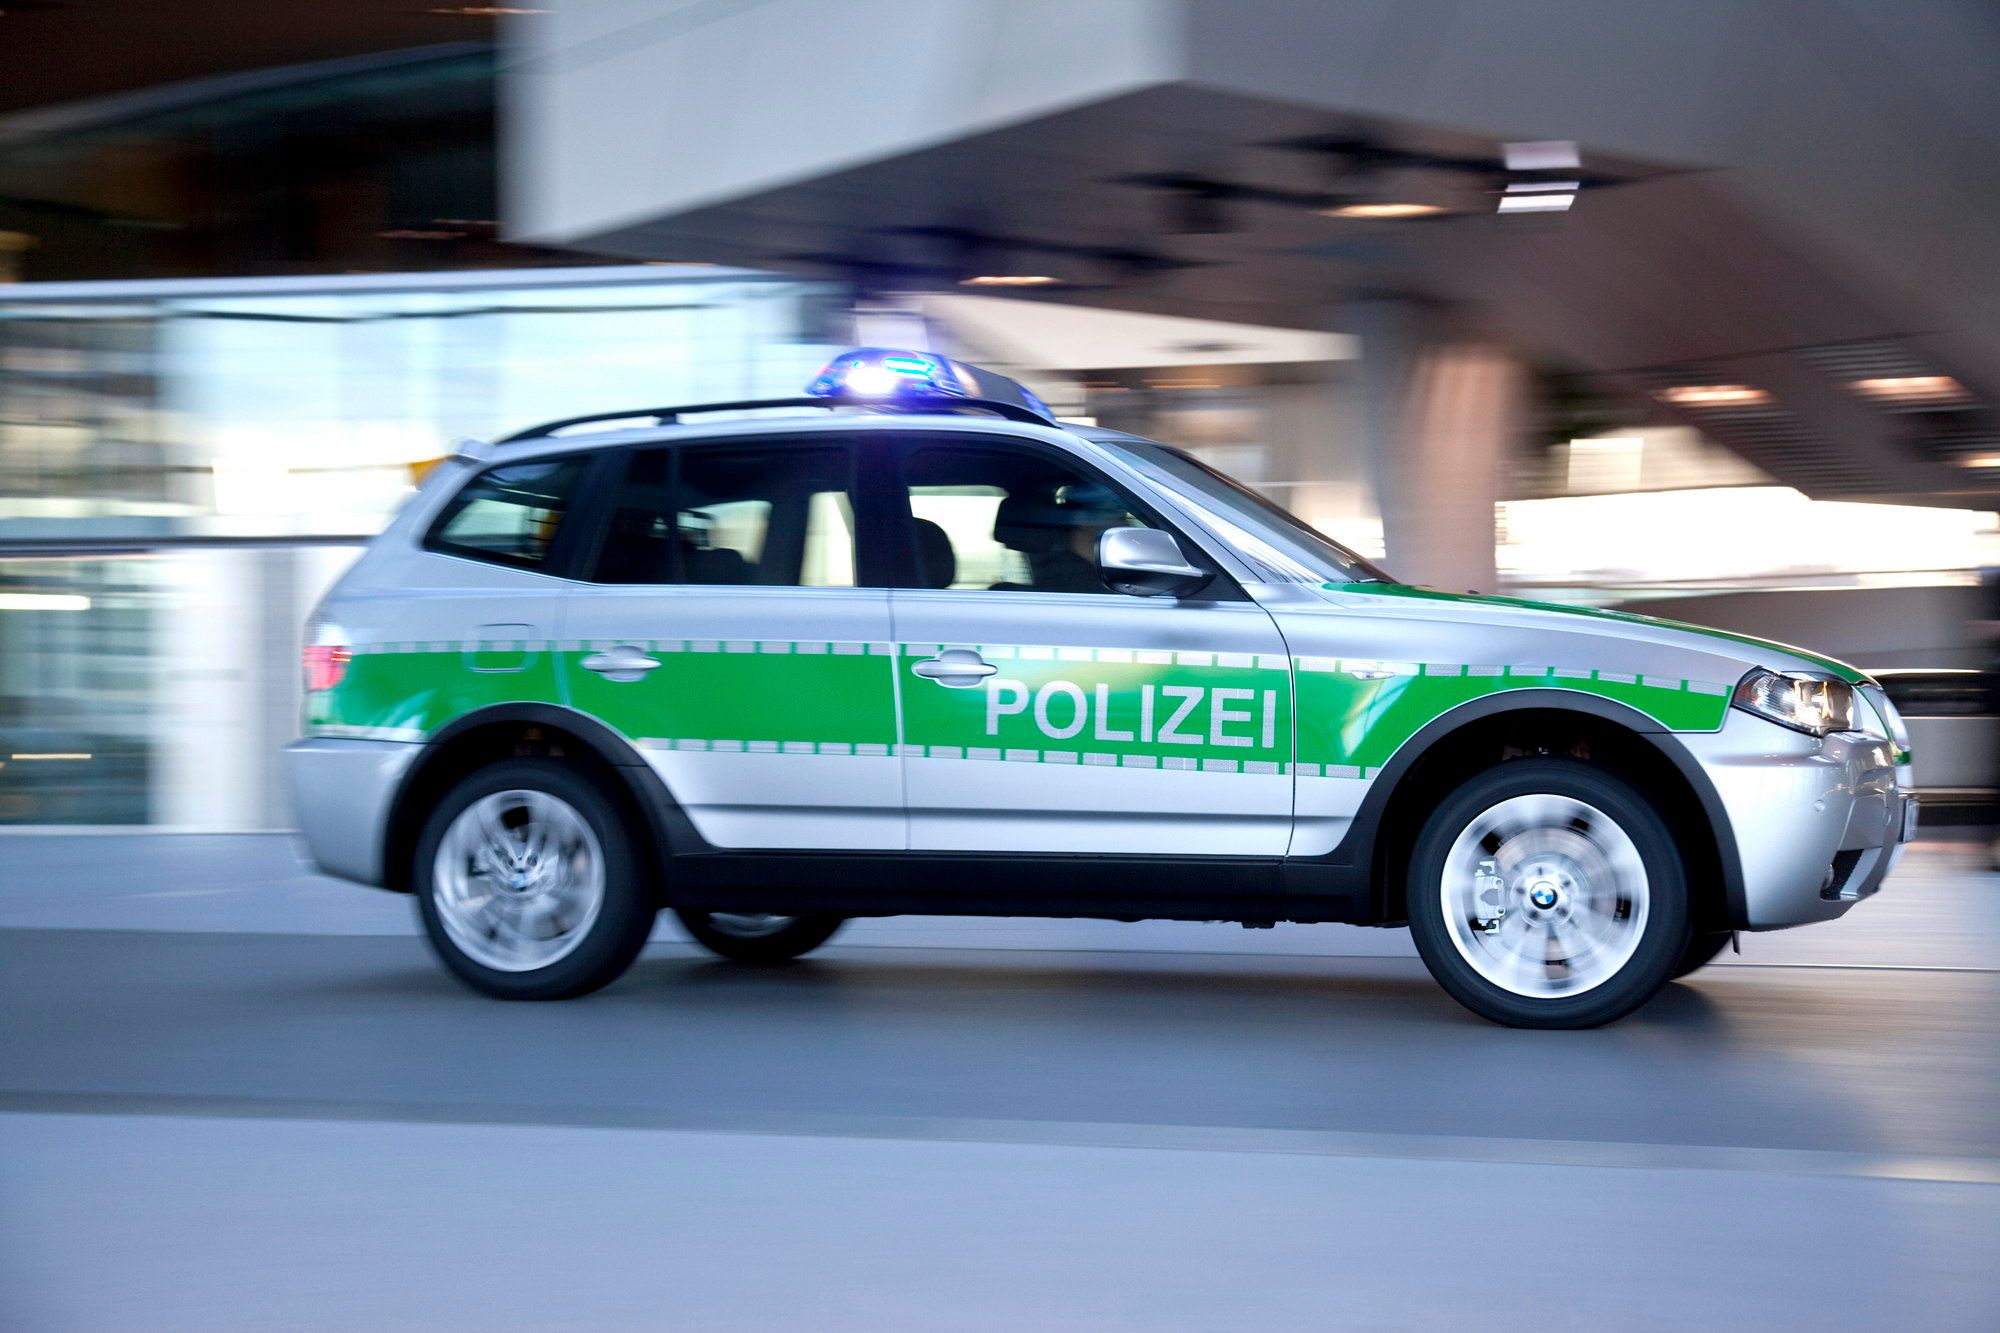 2010 BMW X3 Police Car